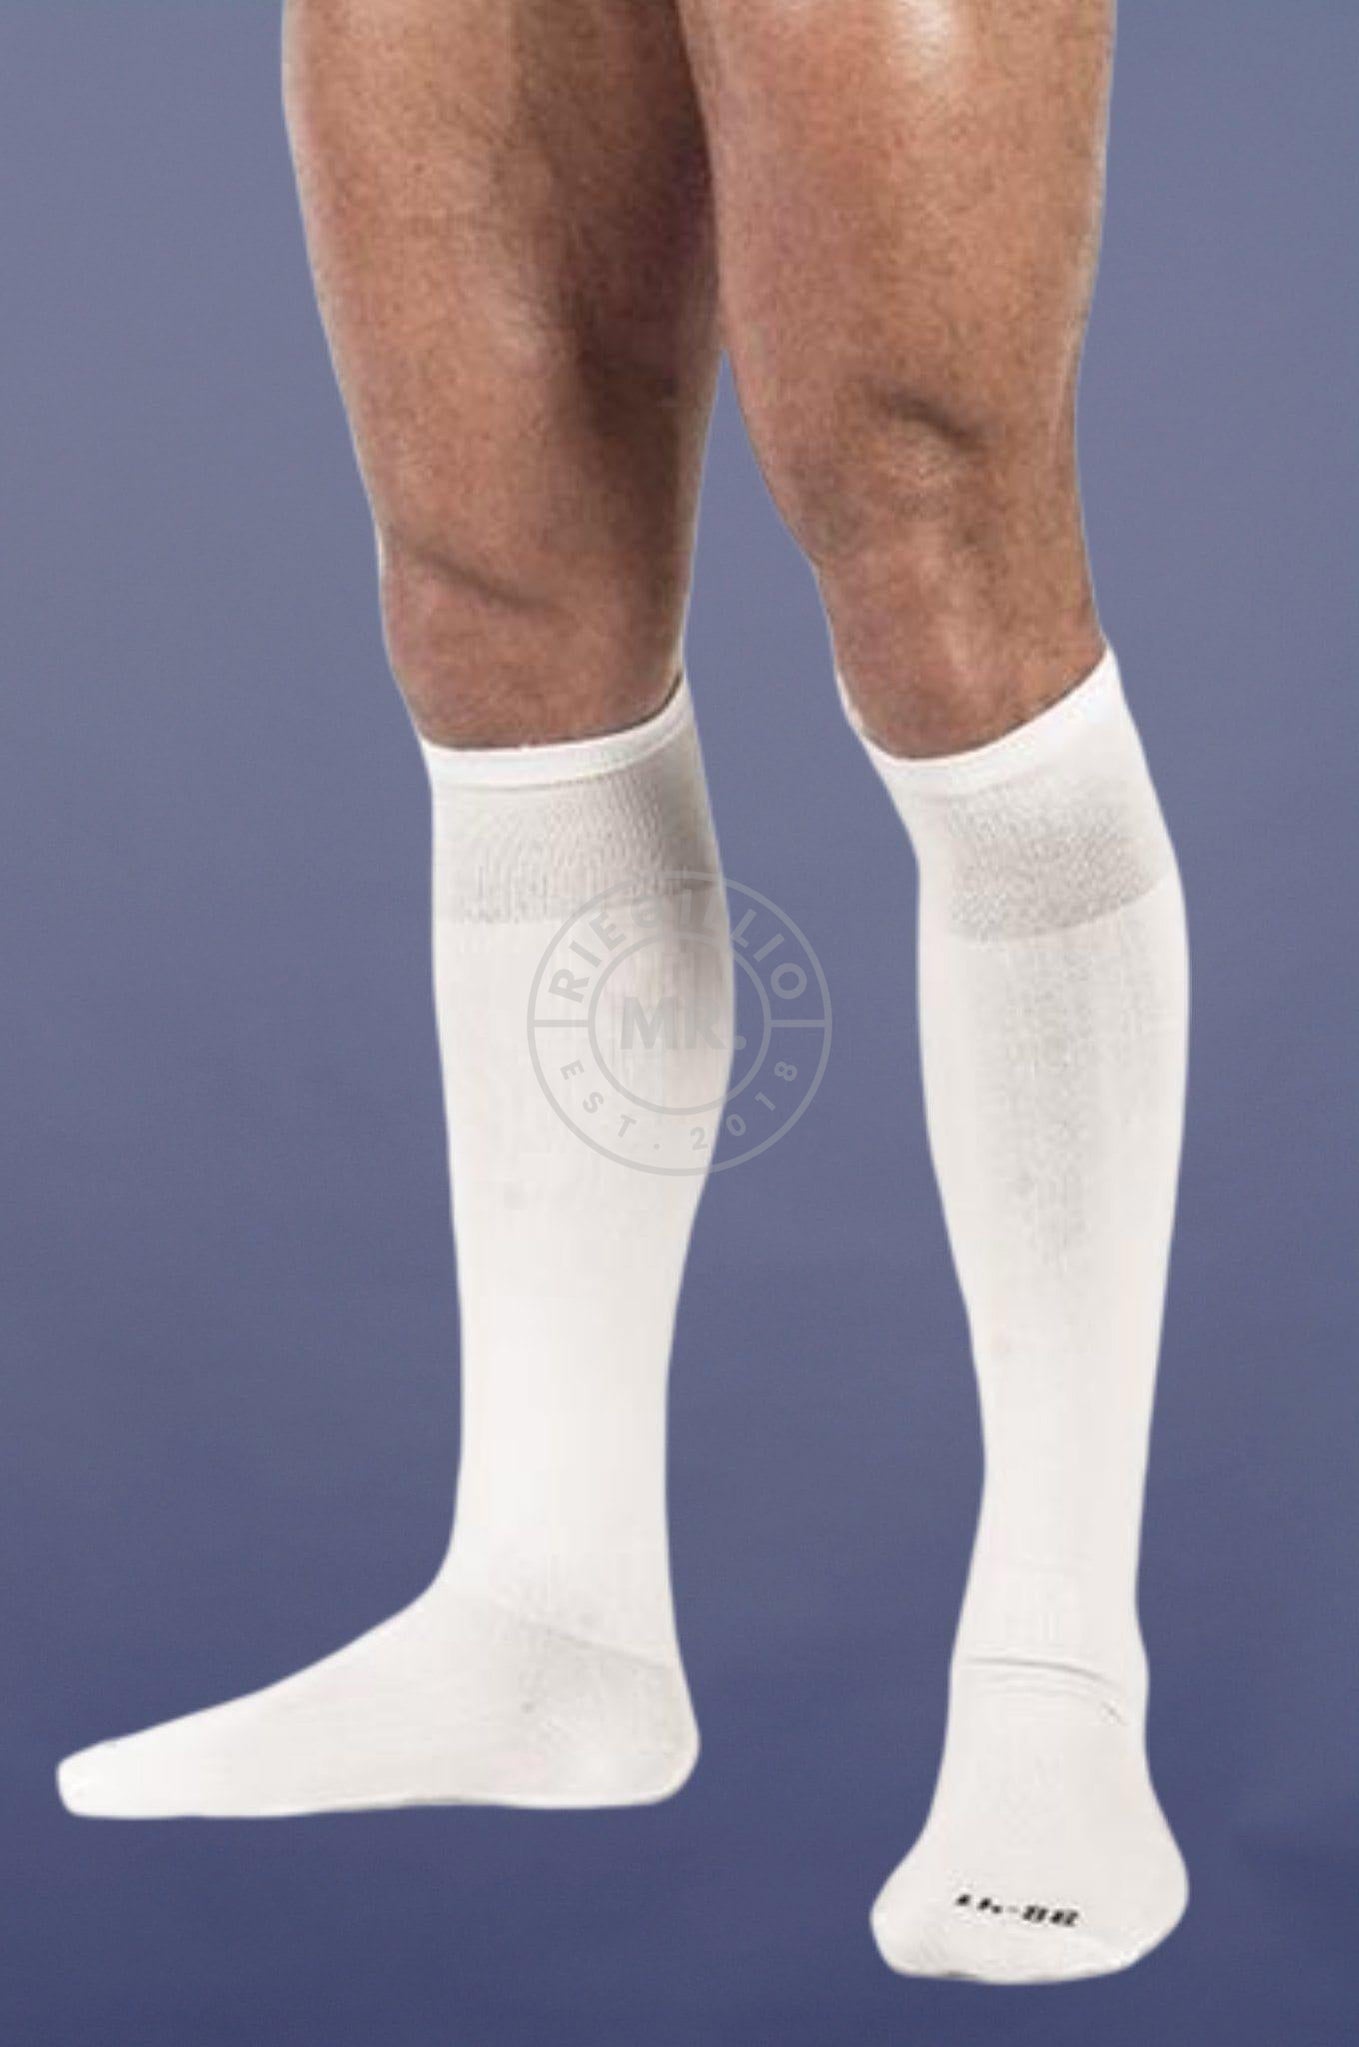 Football Socks White at MR. Riegillio